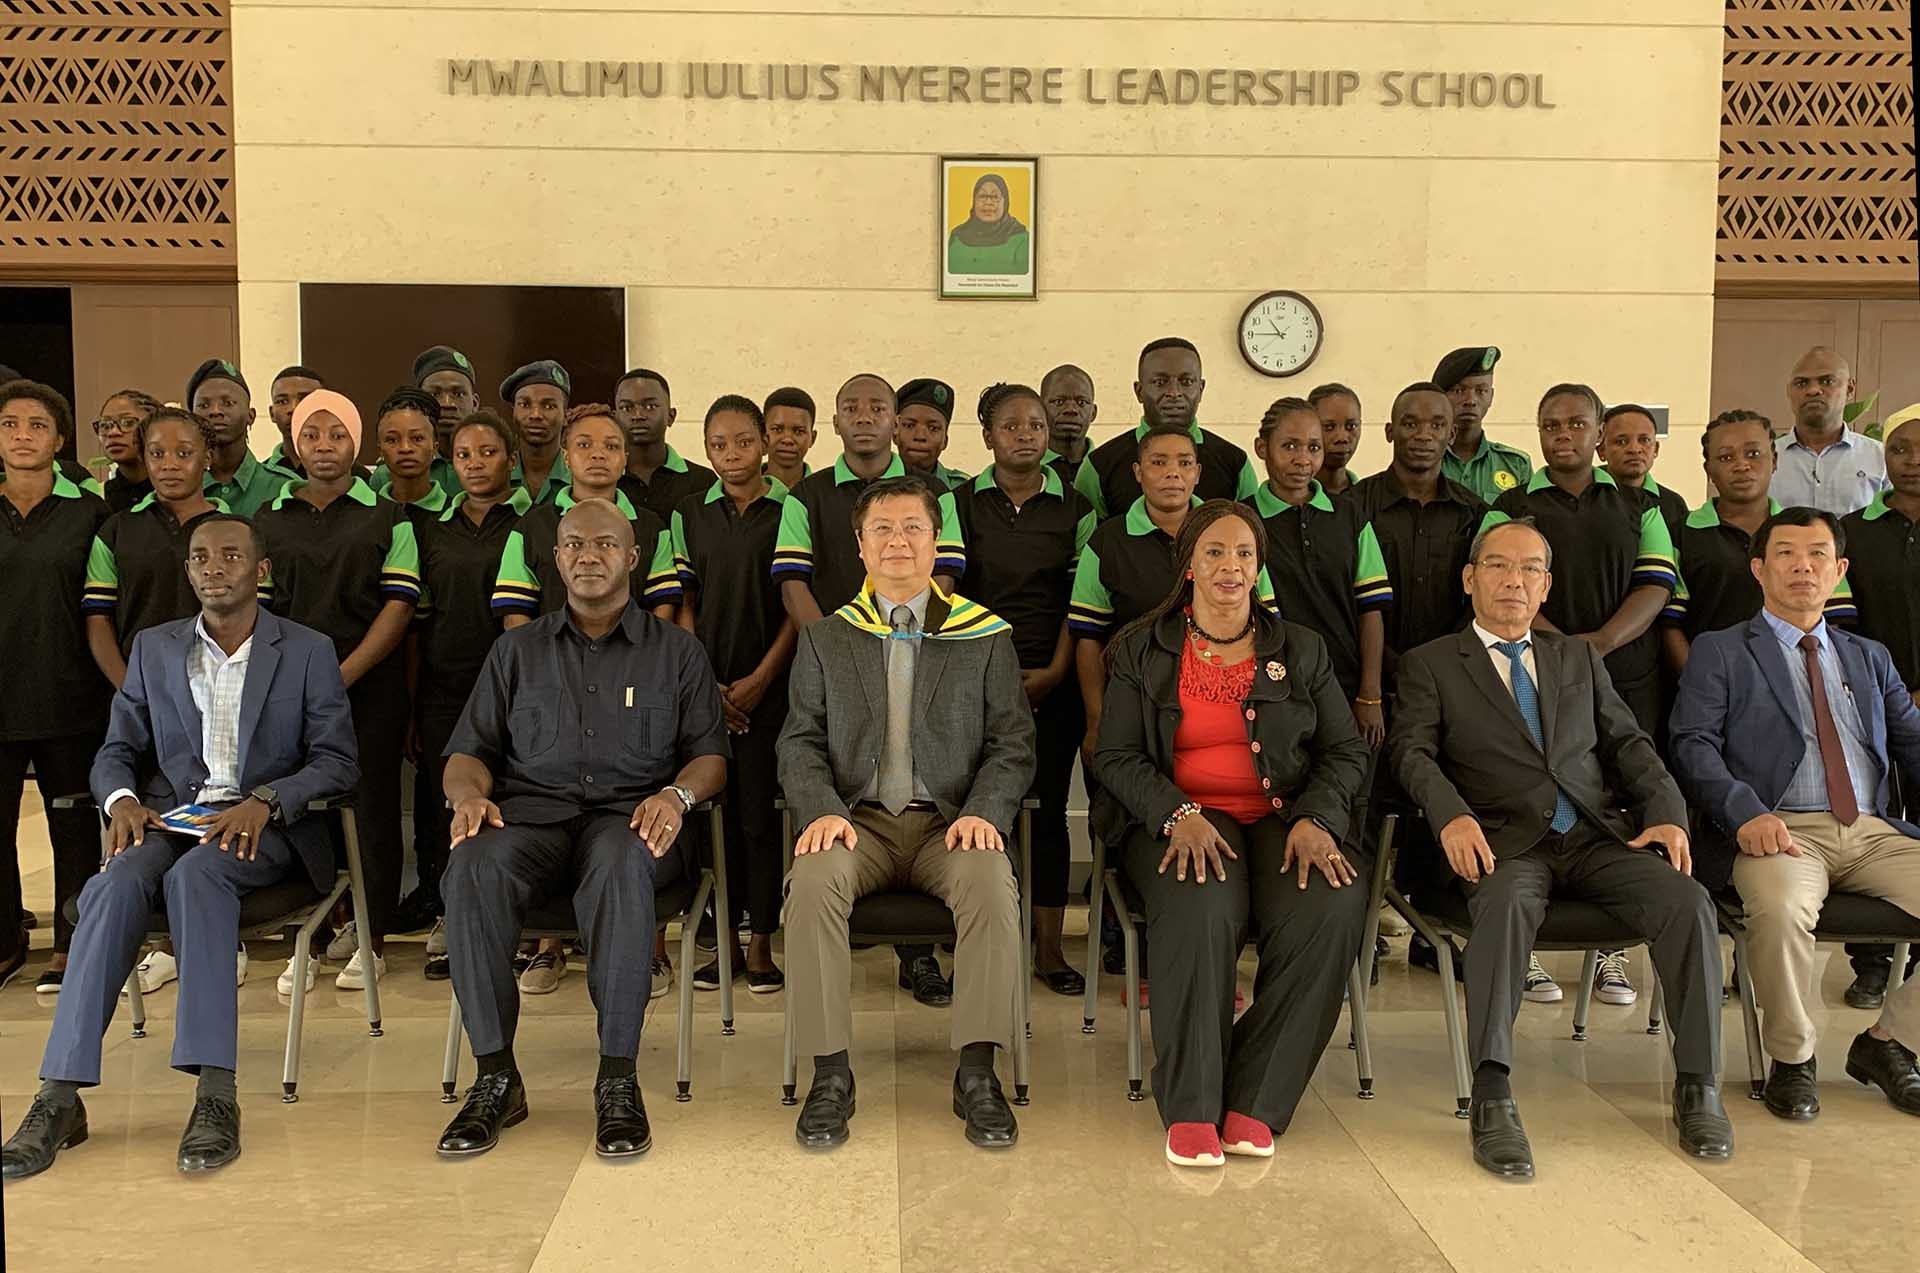 Đoàn đến thăm Trường đào tạo cán bộ Mwalimu Julius Nyerere.